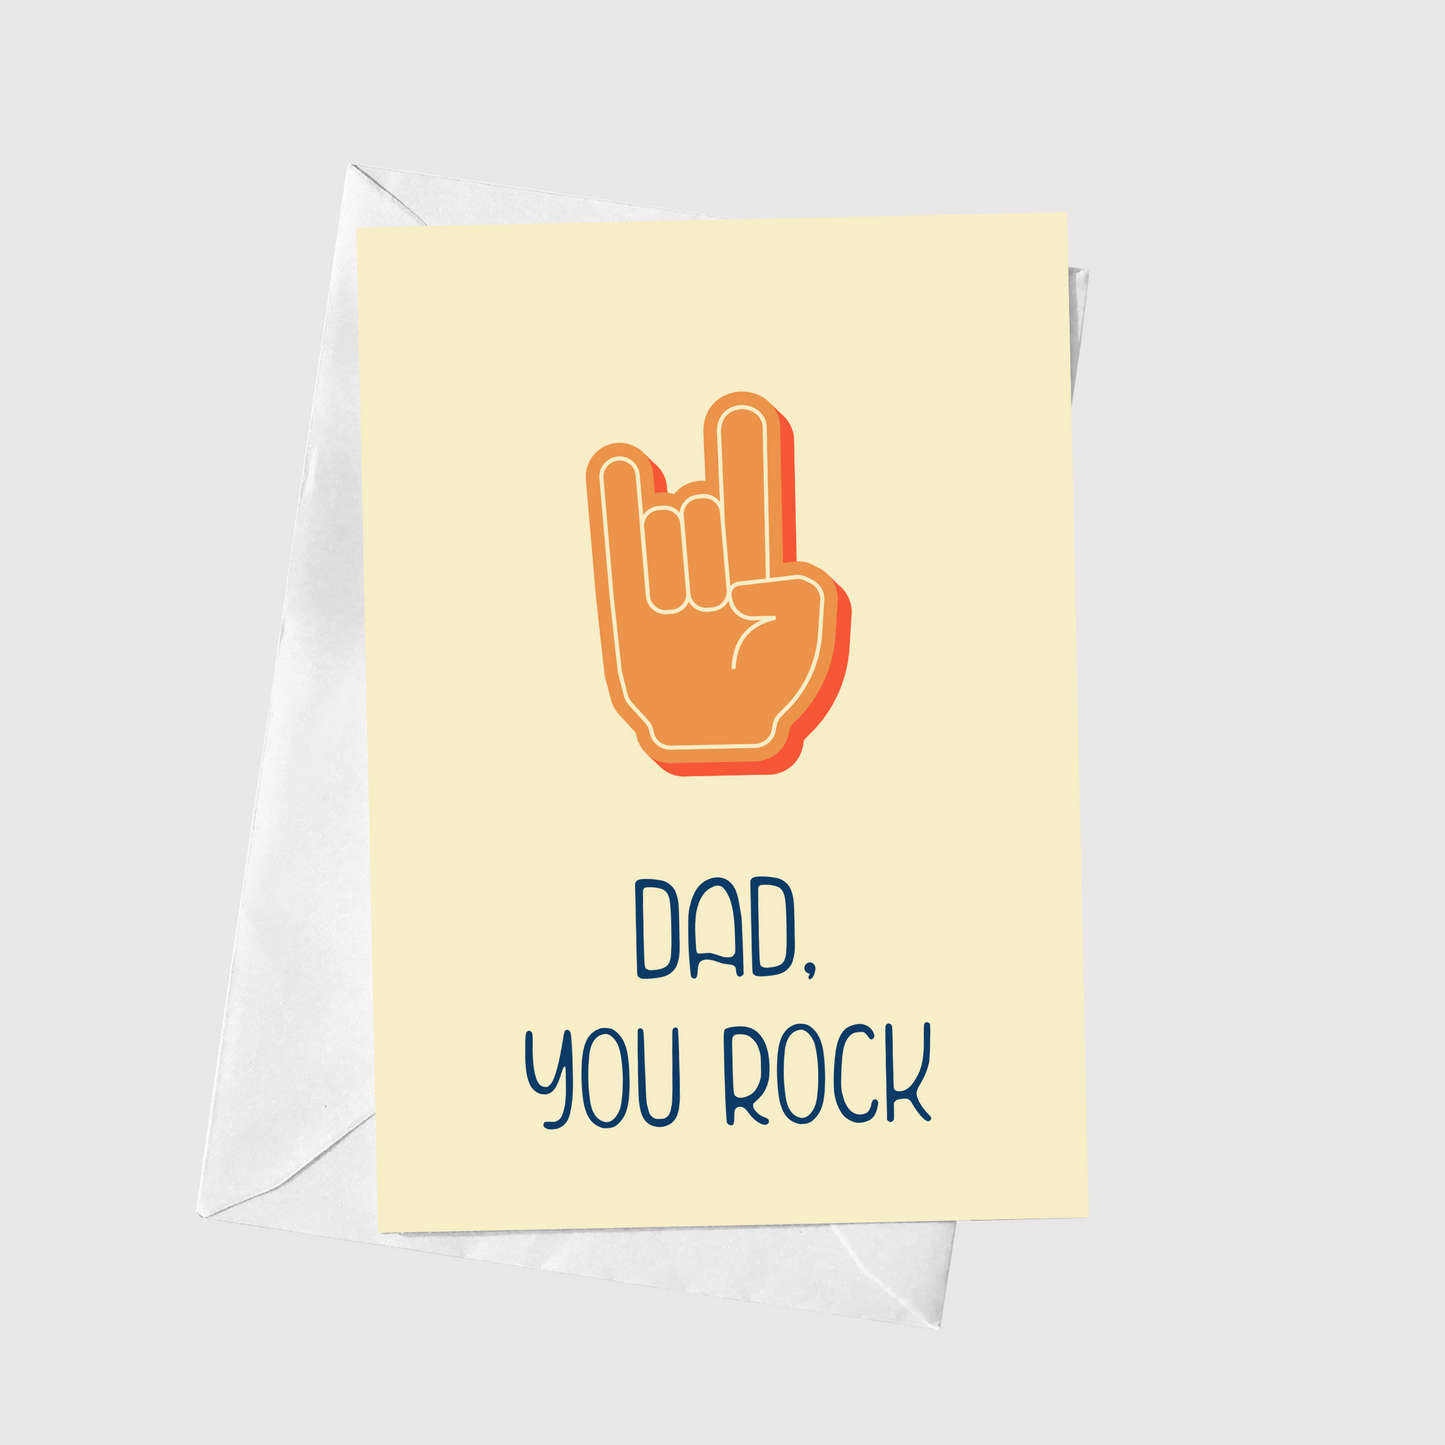 Dad, You Rock!